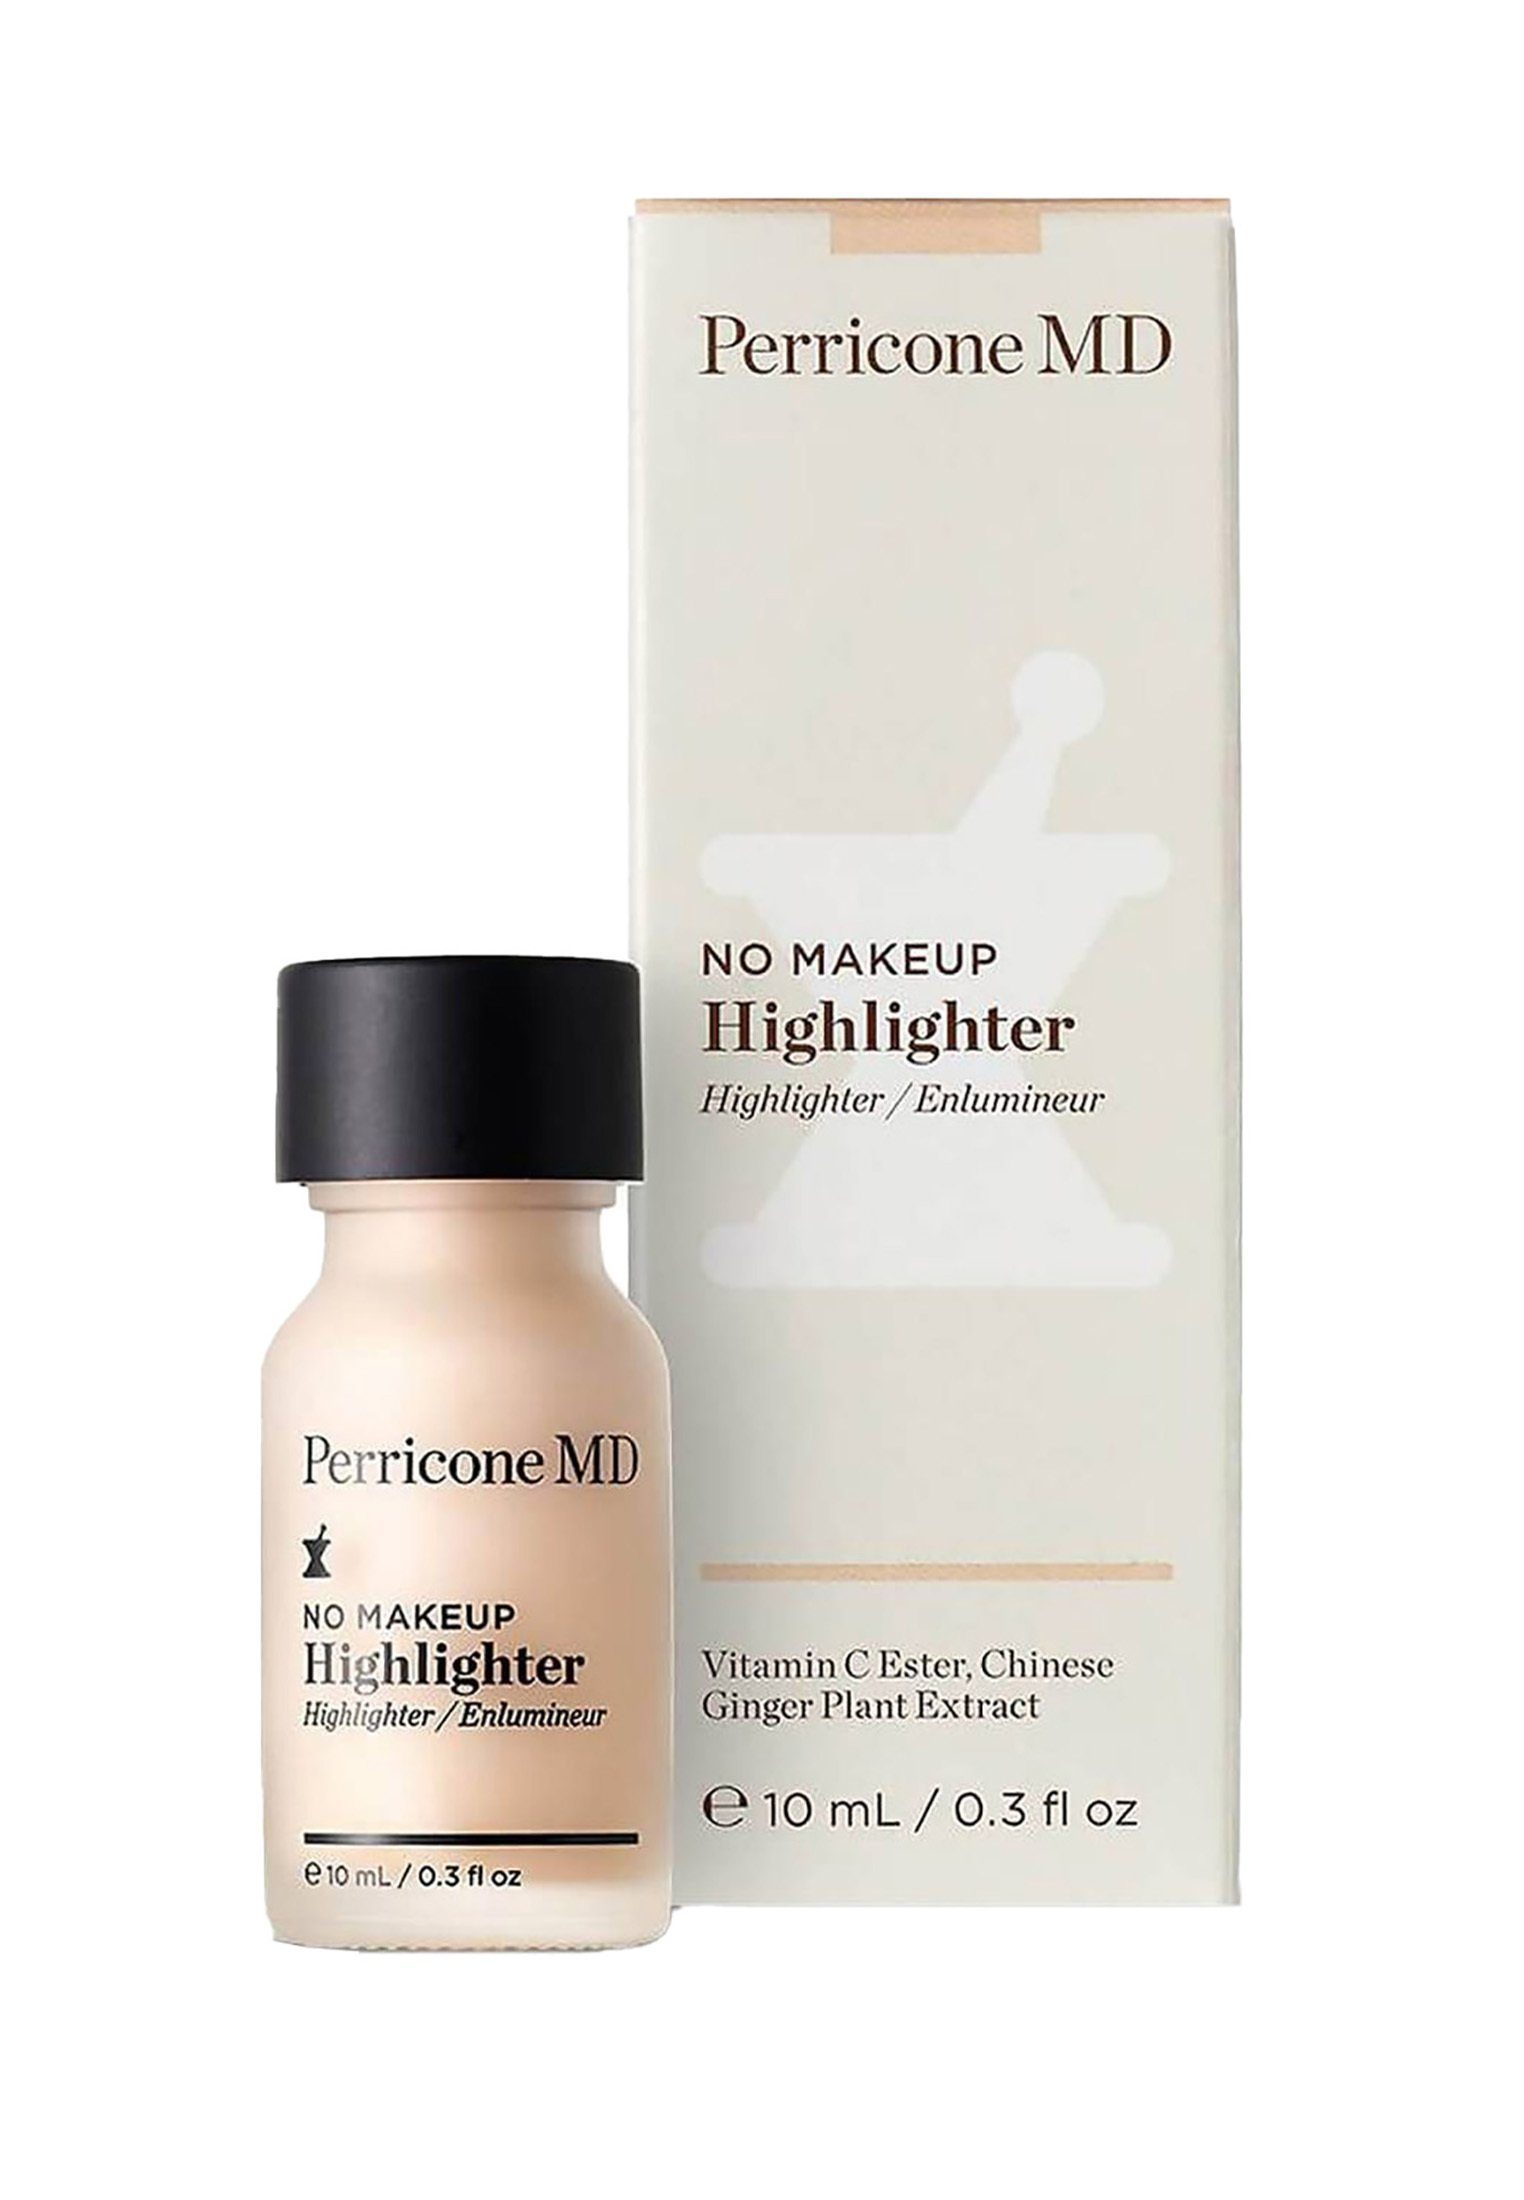 PERRICONE Highlighter Highlighter PERRICONE Highlighter Makeup No